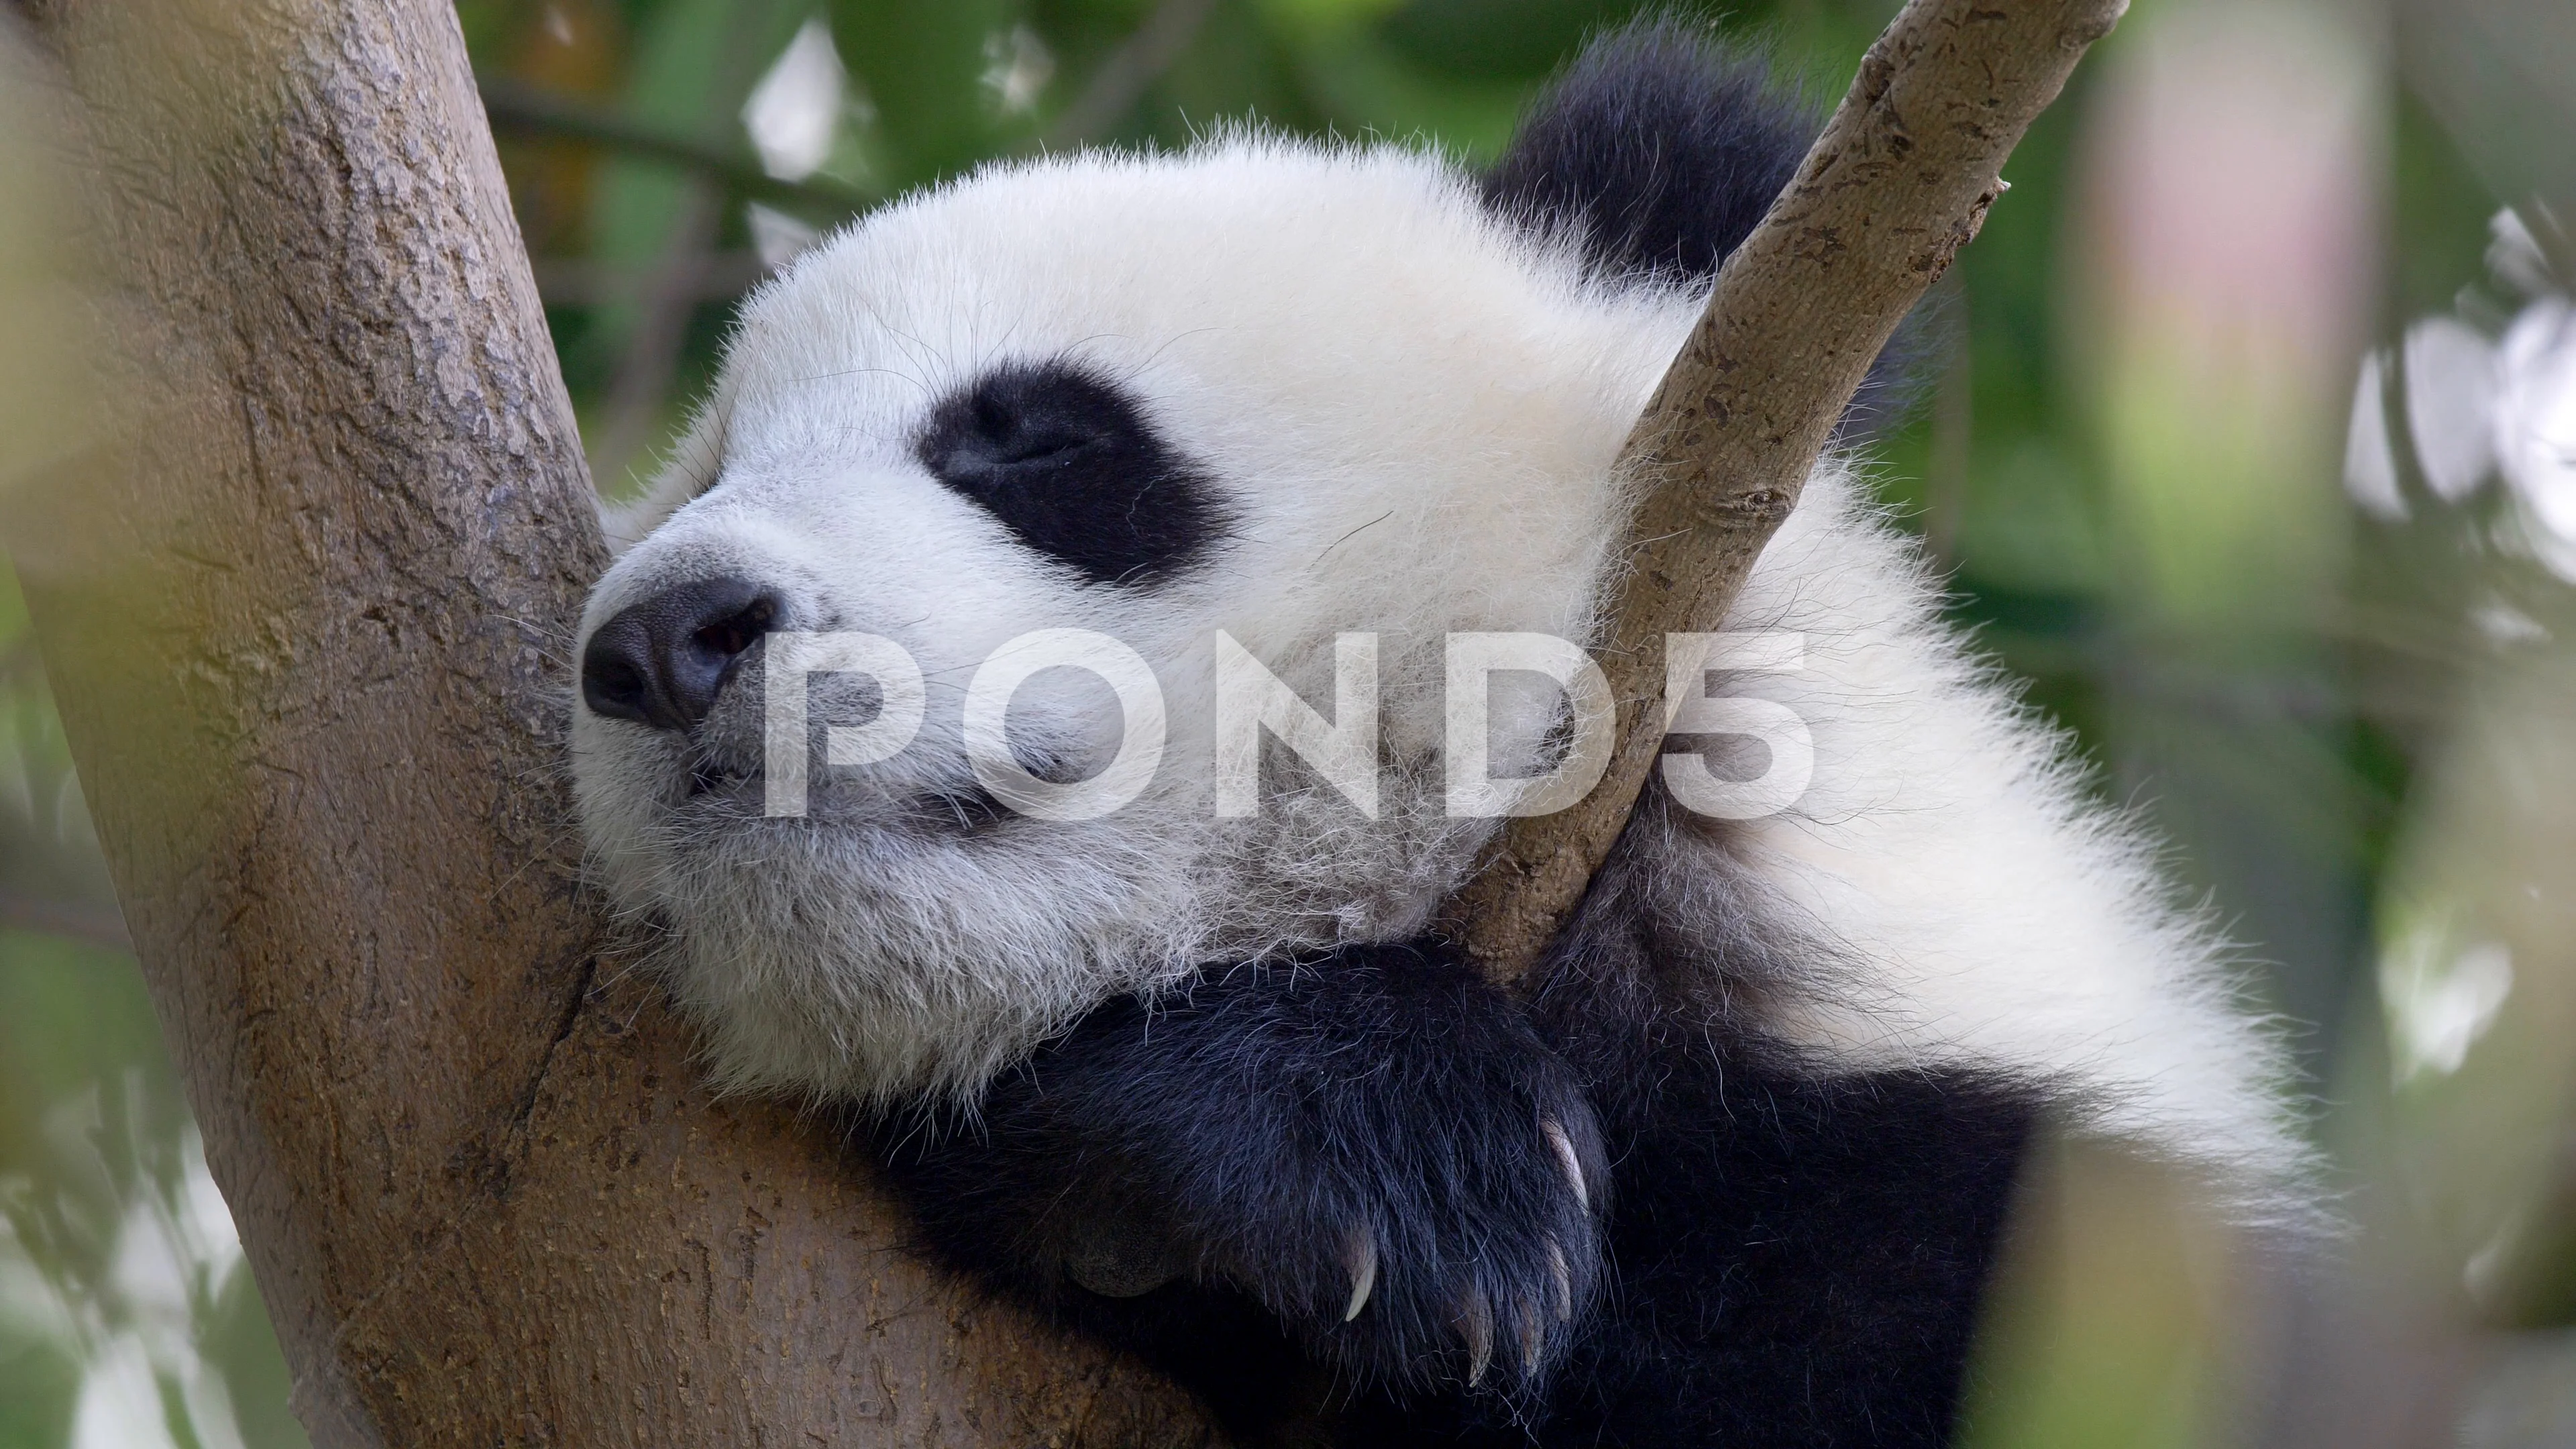 sleeping baby panda